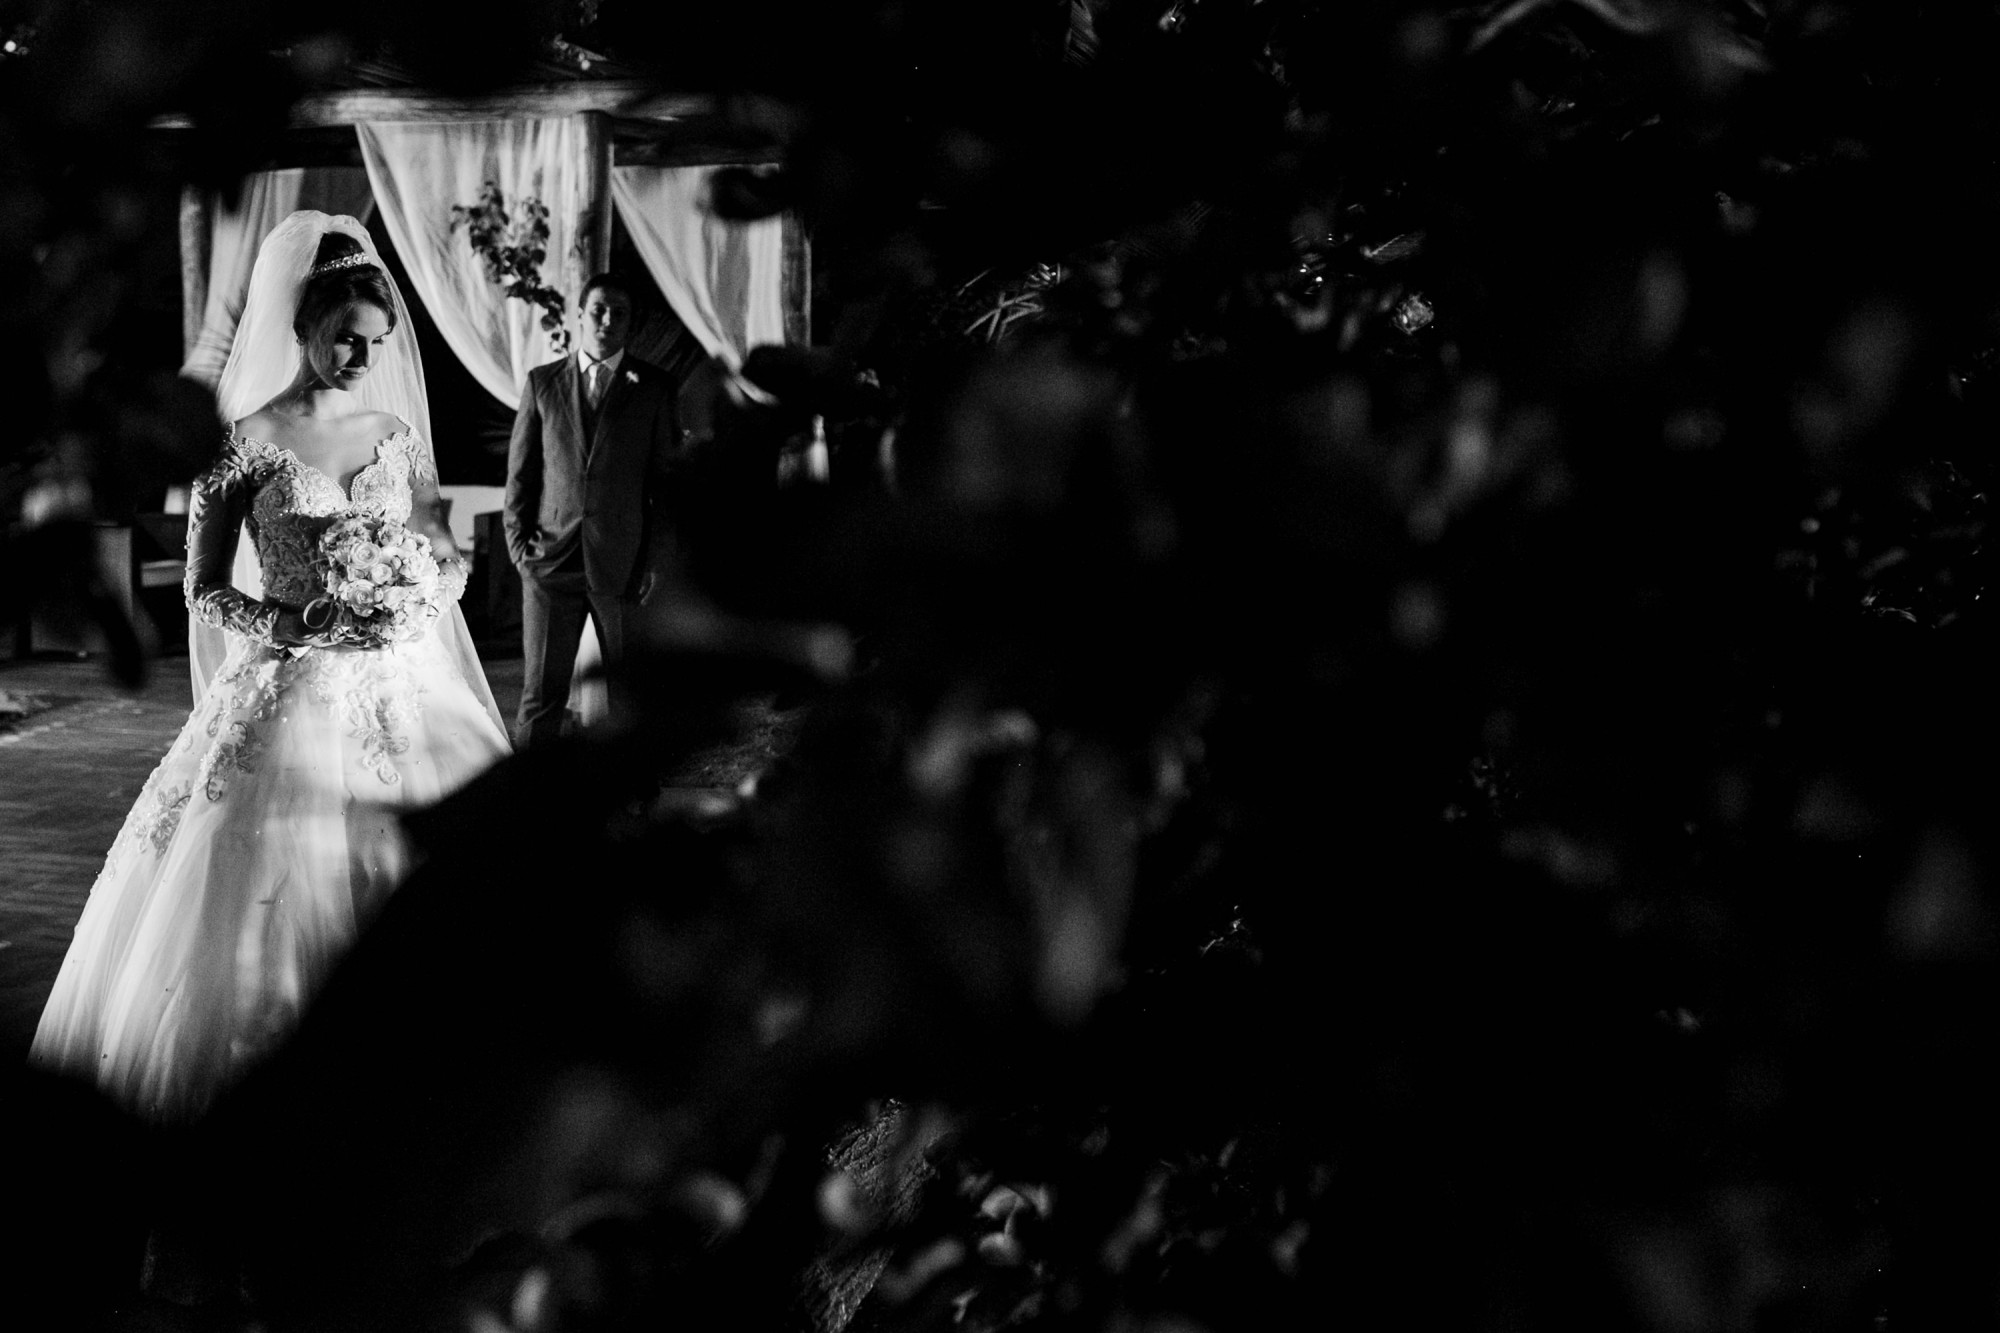 Casamento Anderson e Juliana Fioreli em Iporã Paraná - por Lorran Souza e Léia Sotile - Fotografos de casamentos - JA-2087